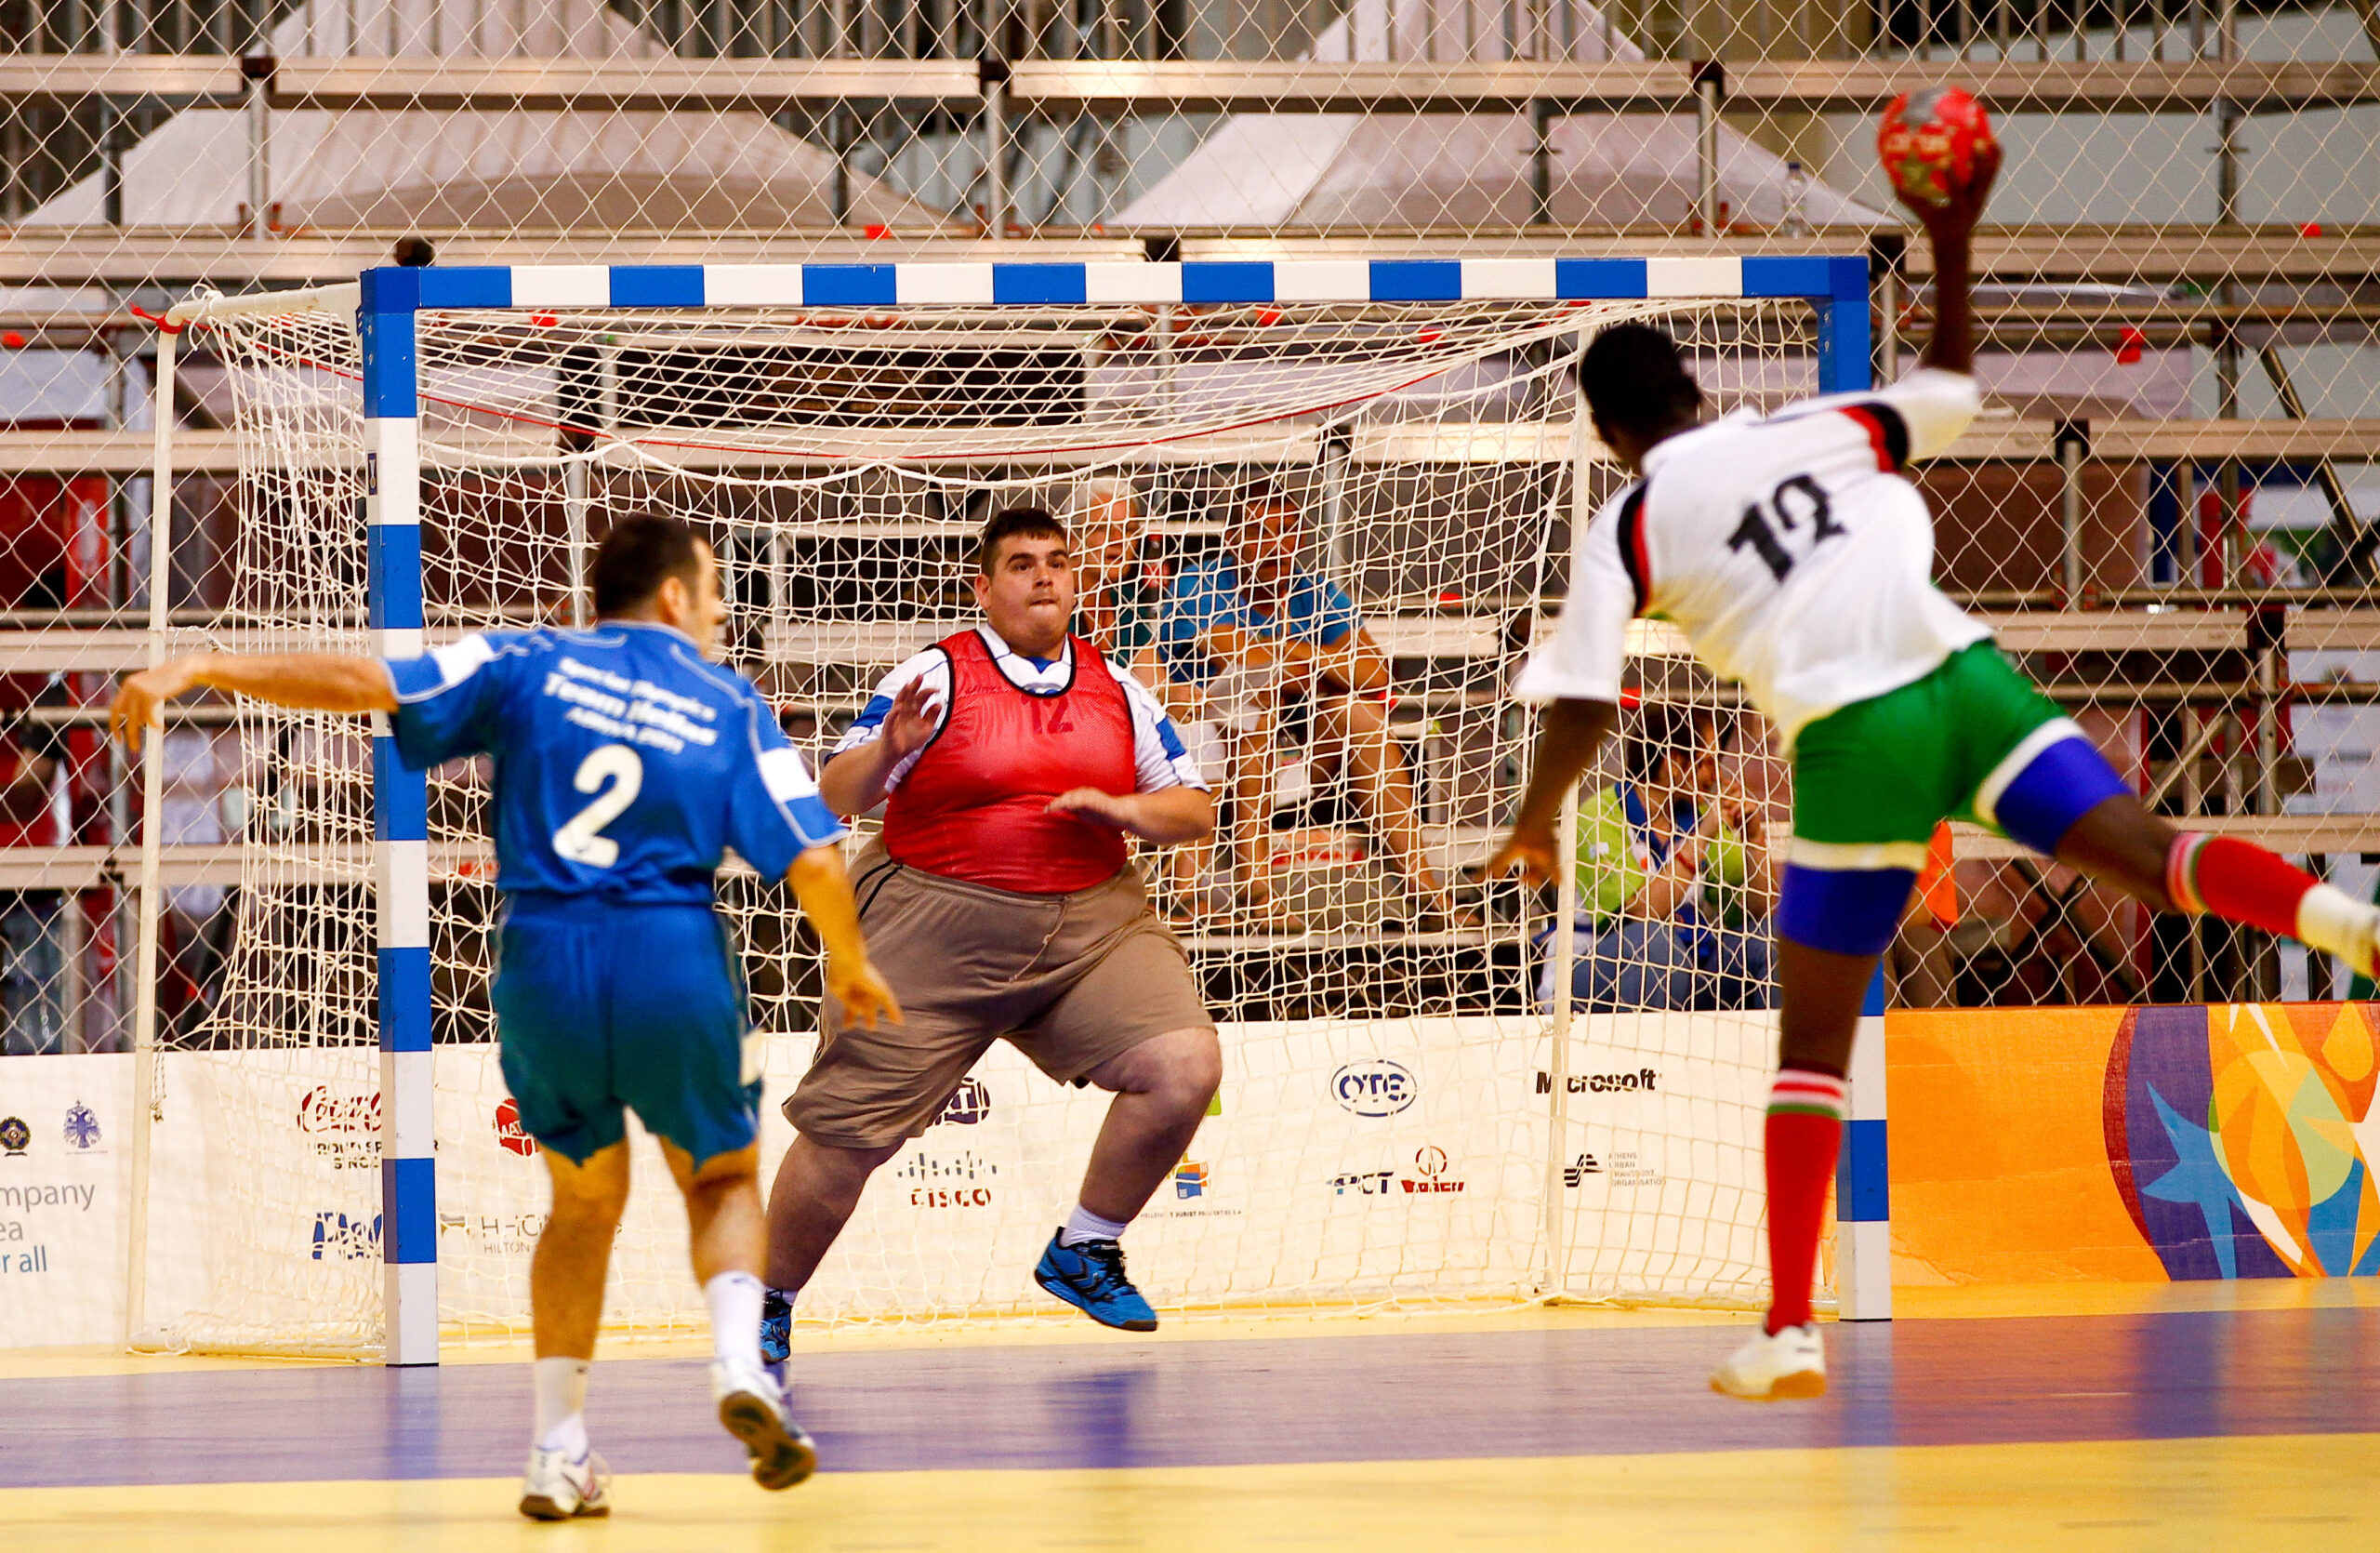 En manlig handbollsspelare siktar bollen mot mål där målvakten står och ser fokuserad ut.